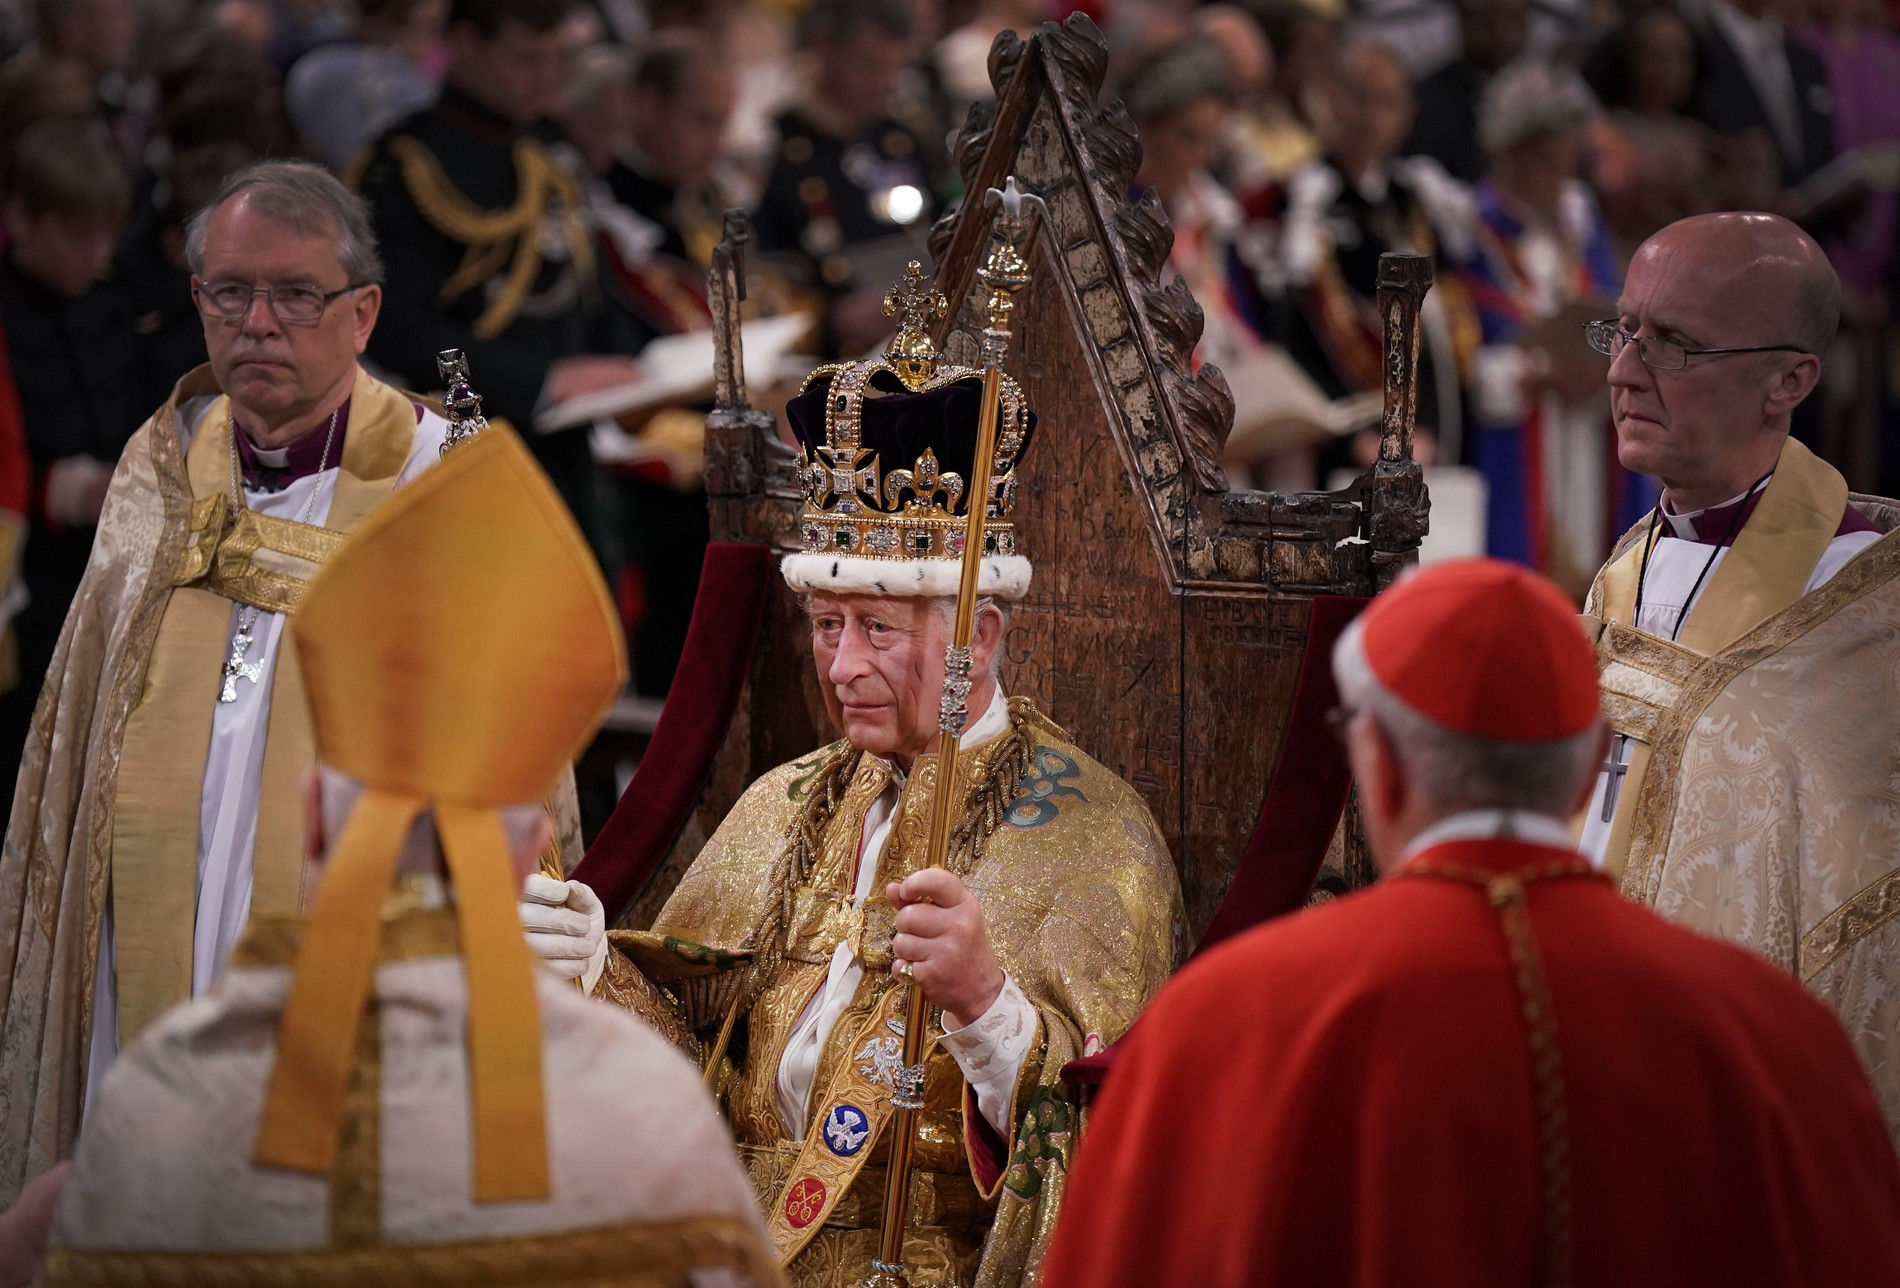 Карл выглядел грустным на церемонии коронации
Фото: Getty Images